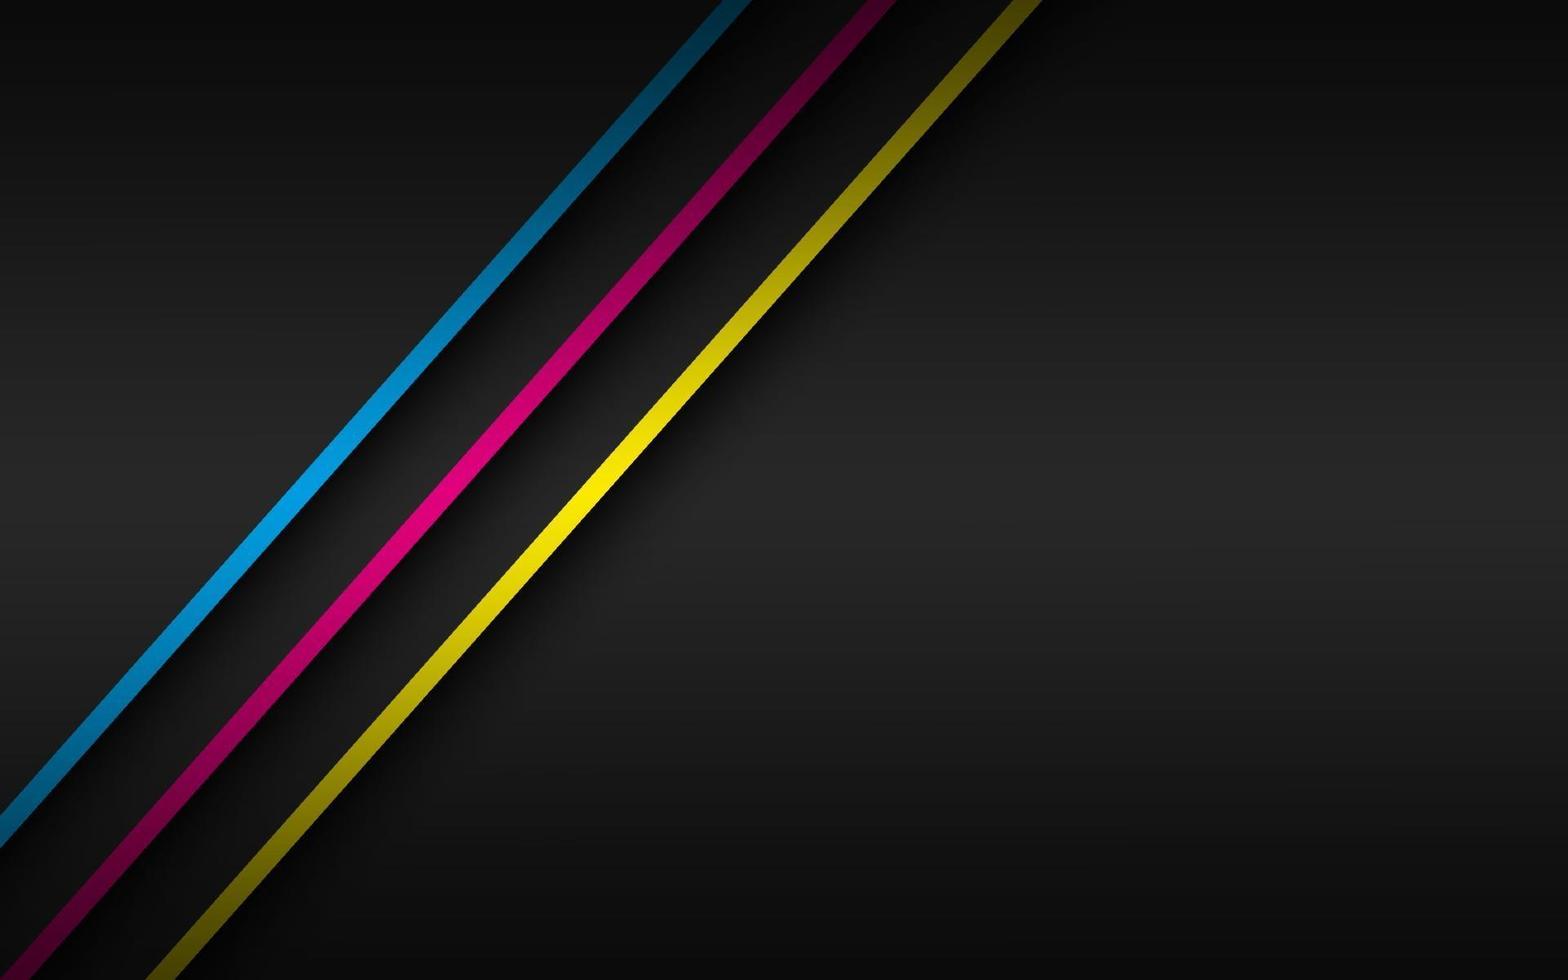 svart modern materialbakgrund med överlappande lager och diagonala linjer i cmyk-färger. mall för ditt företag. vektor abstrakt widescreen bakgrund